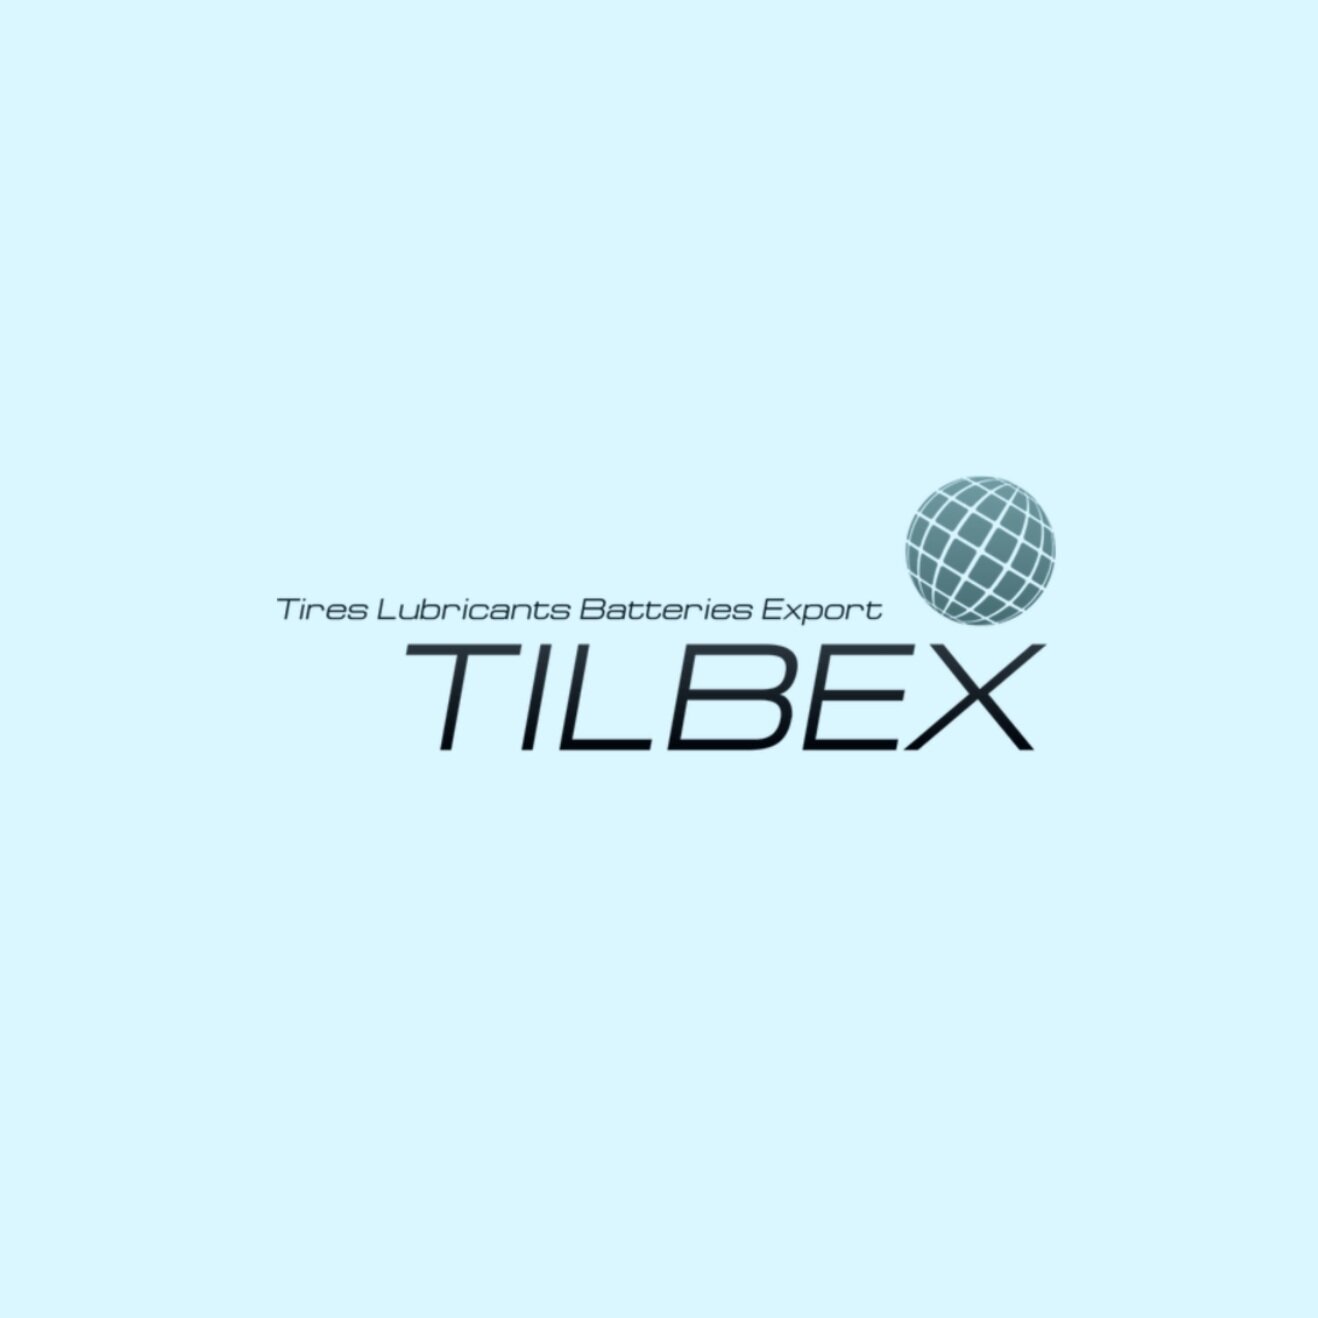 Tilbex_web.jpg